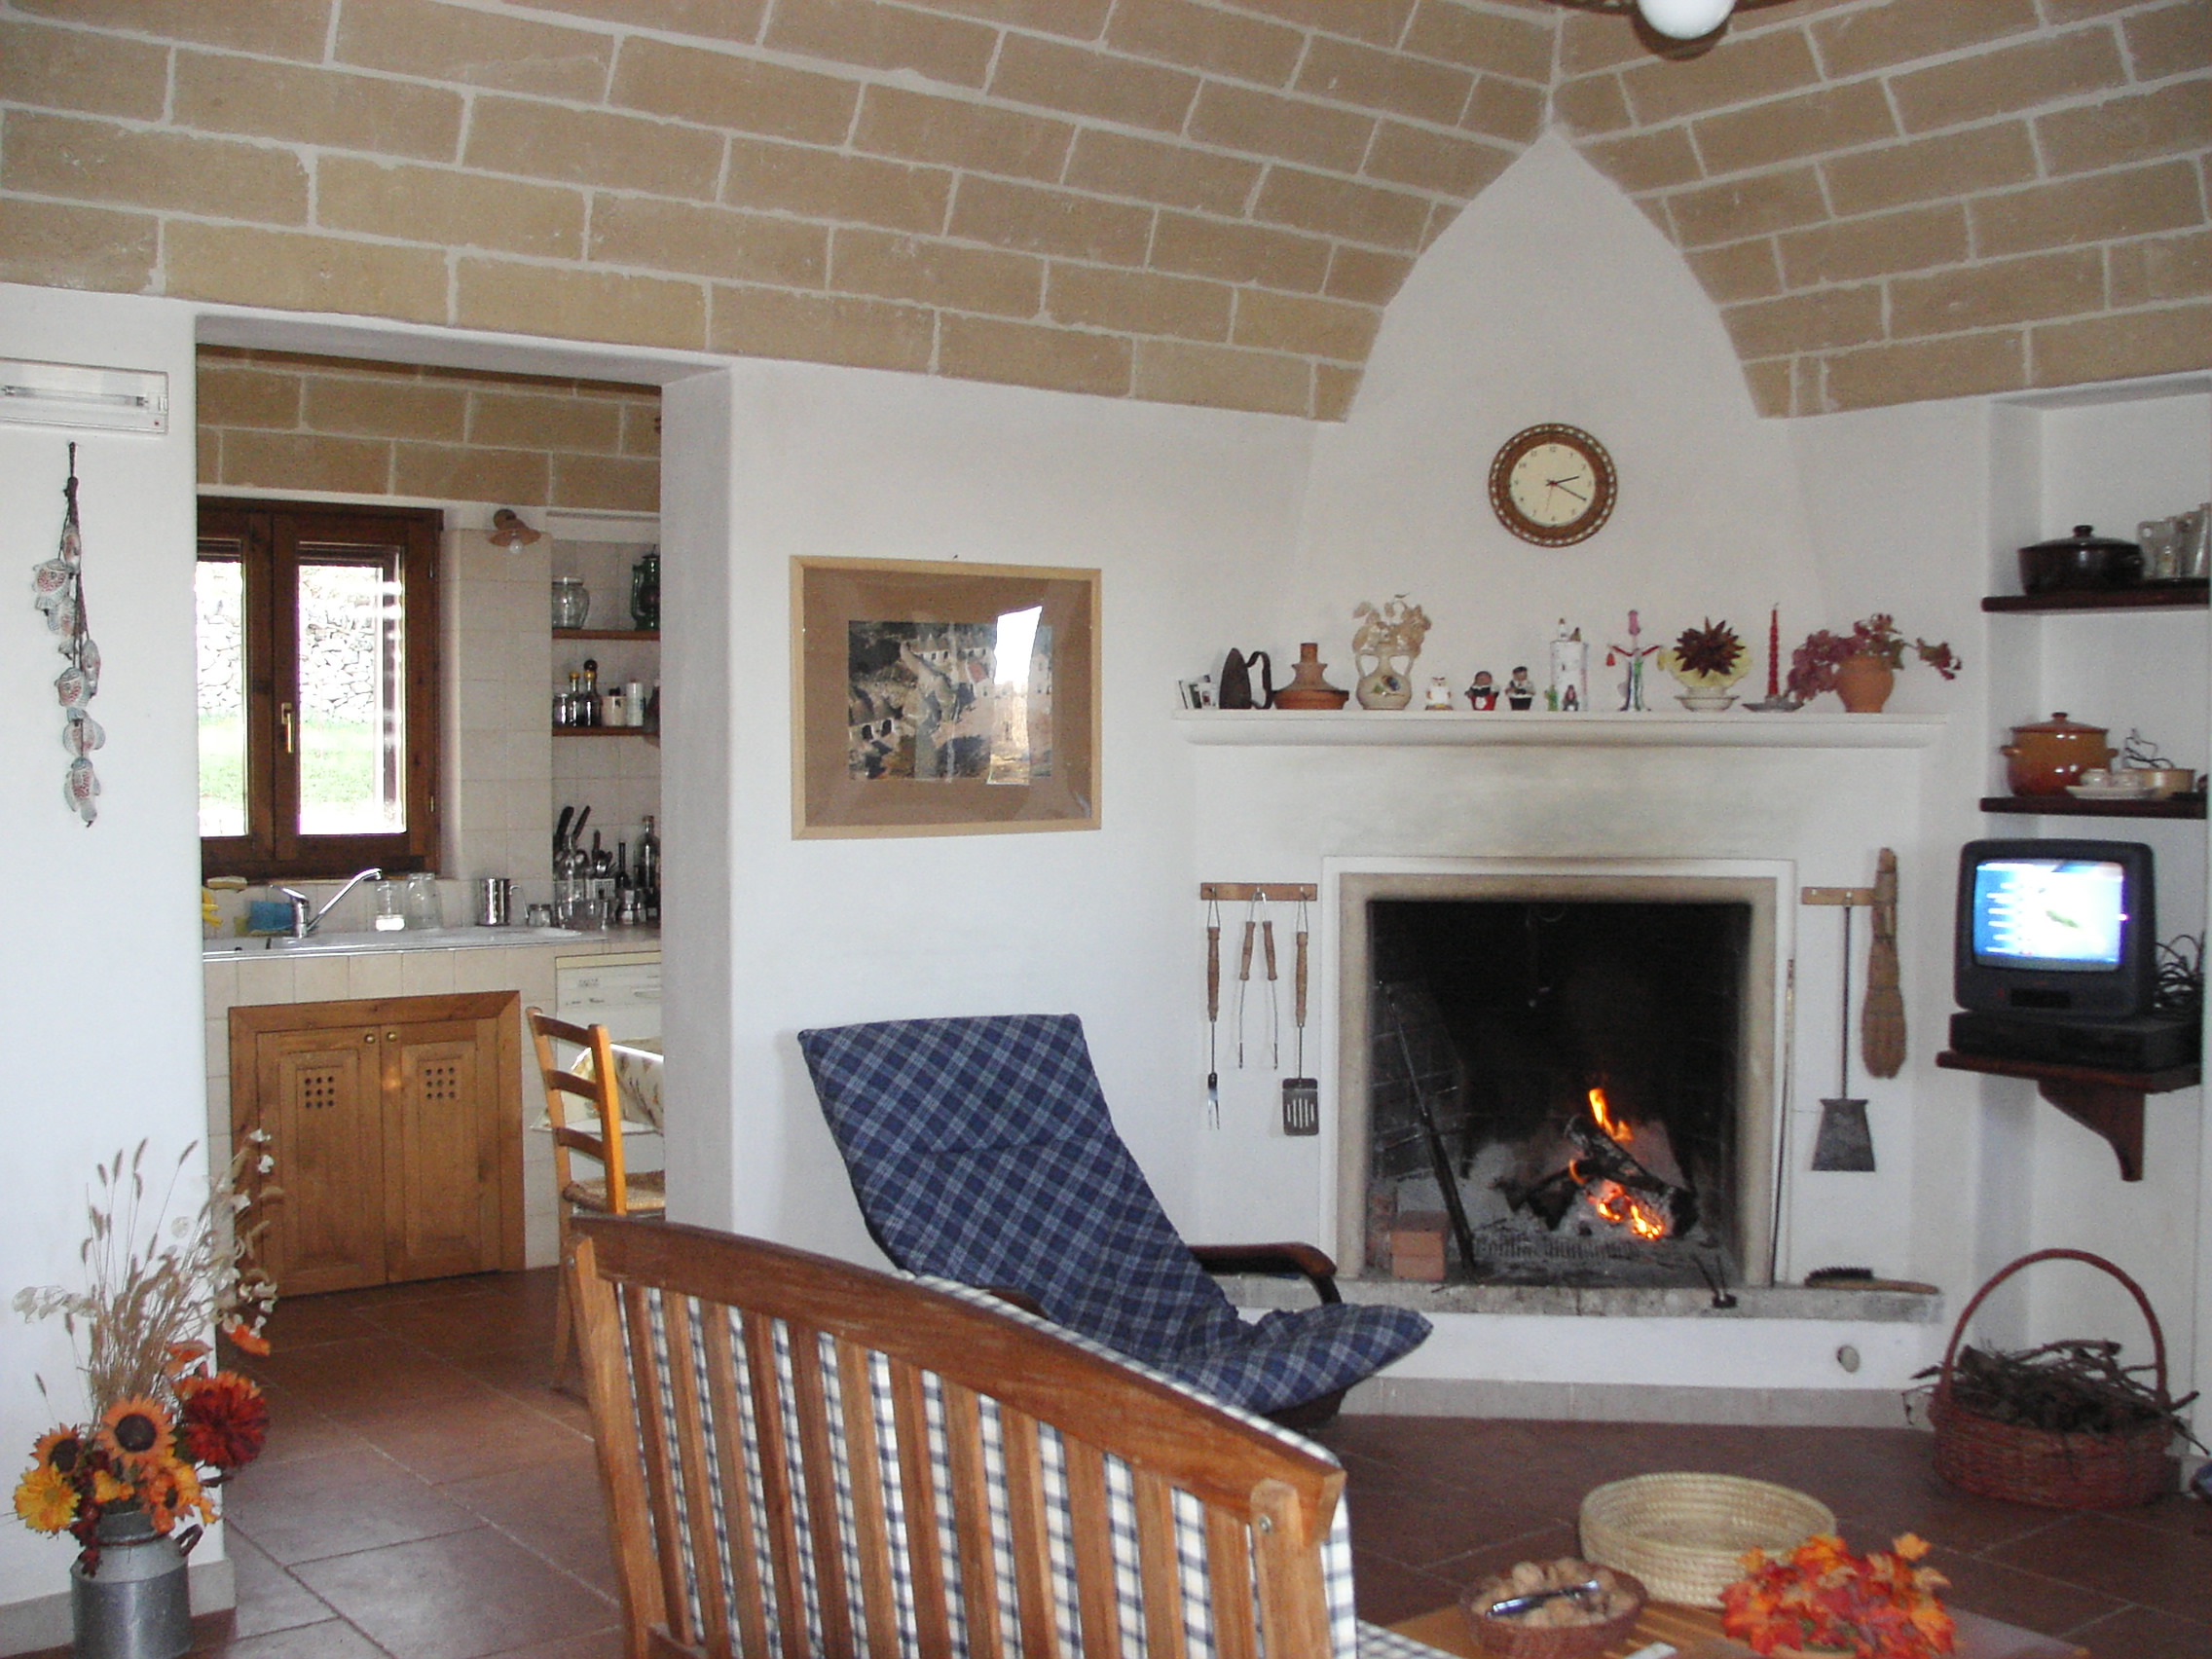 Soggiorno e cucina - Living room and kitchen - Salon et cuisine